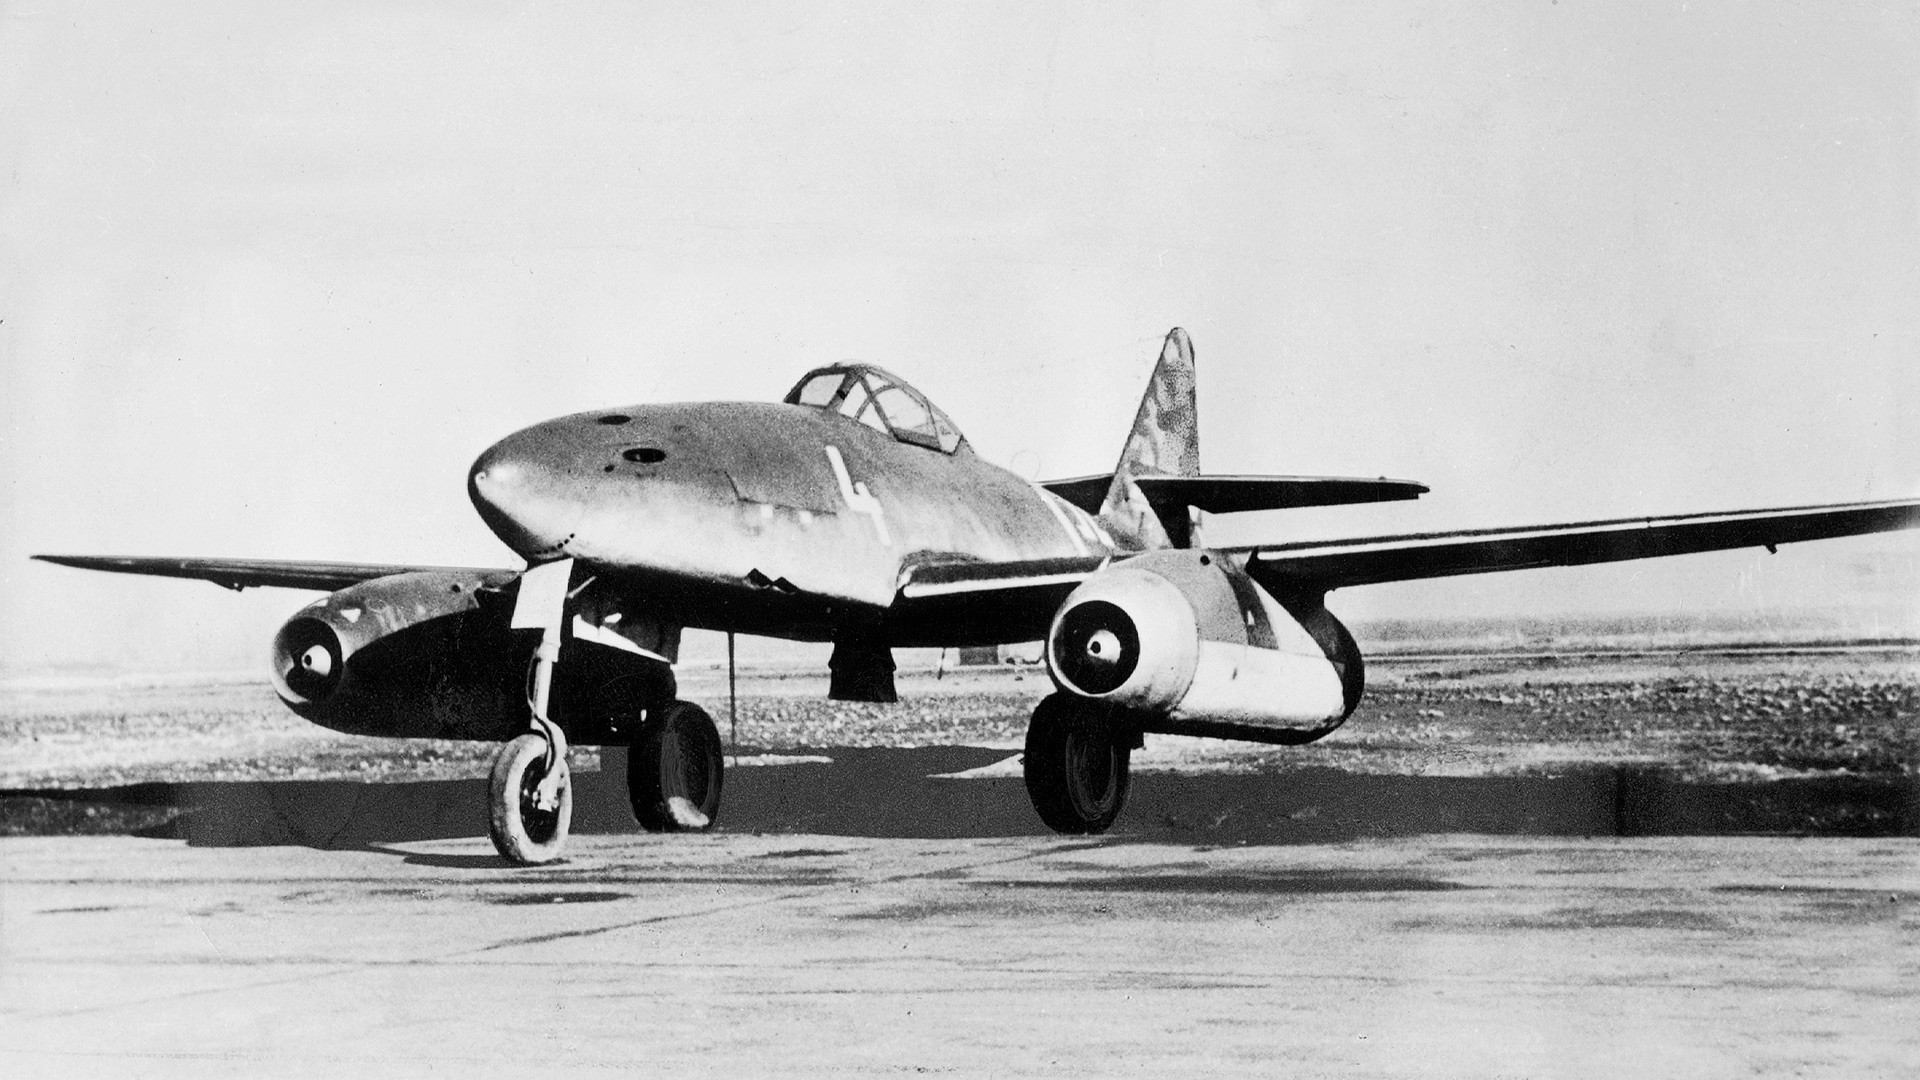 Messerschmitt Me 262

